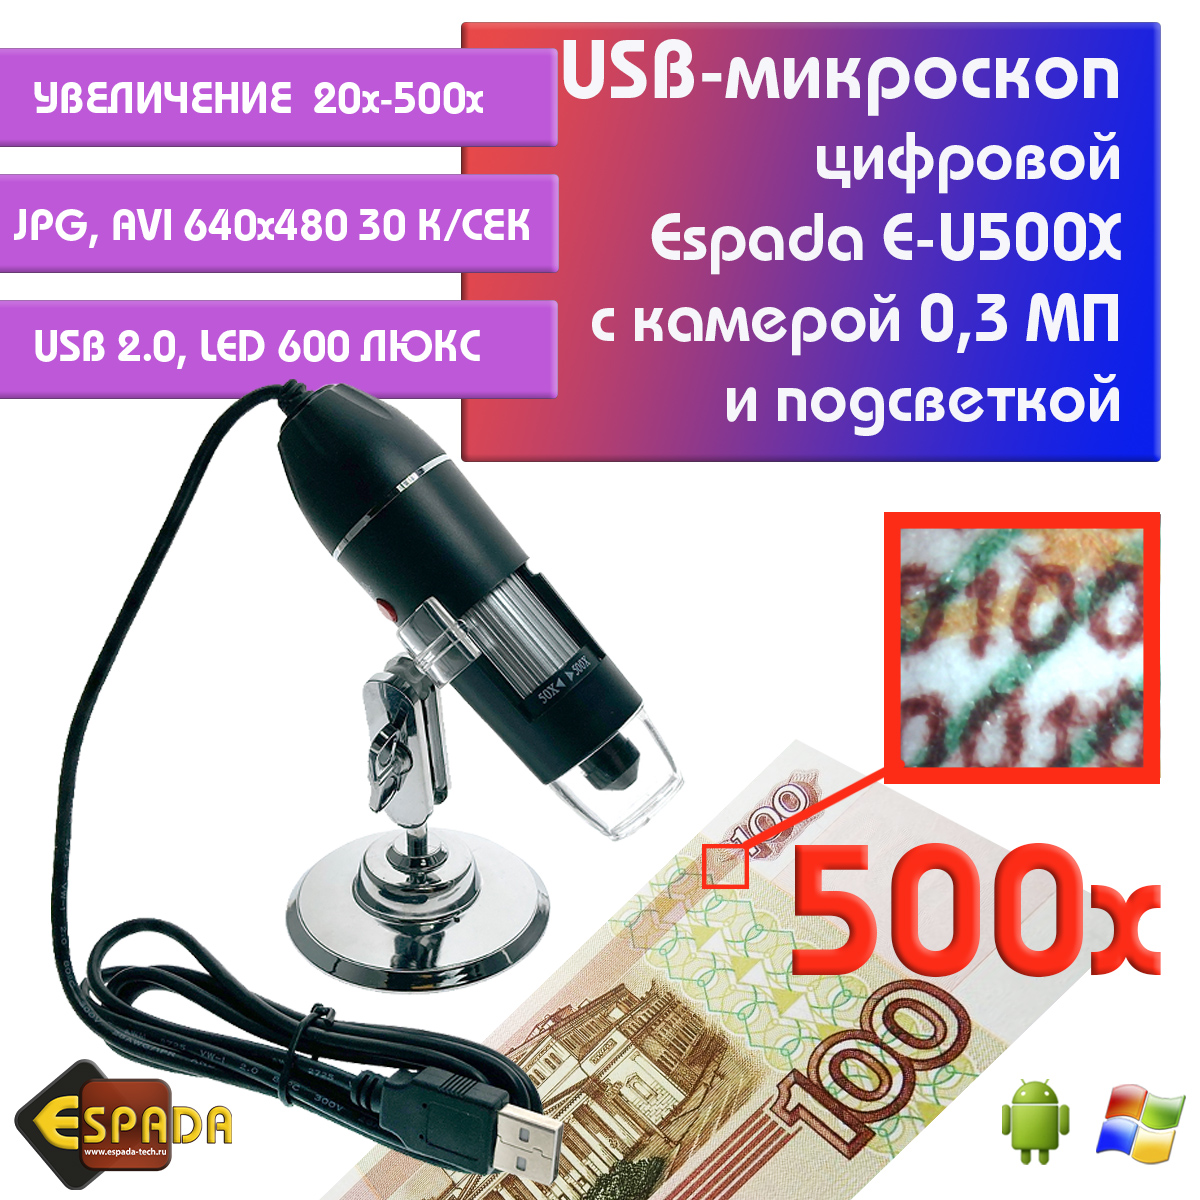 Портативный цифровой USB-микроскоп Espada E-U500X c камерой 0,3 МП и увеличением 500x видеокарта gigabyte geforce gtx 1650 d6 4g gv n1656d6 4gd 2 0